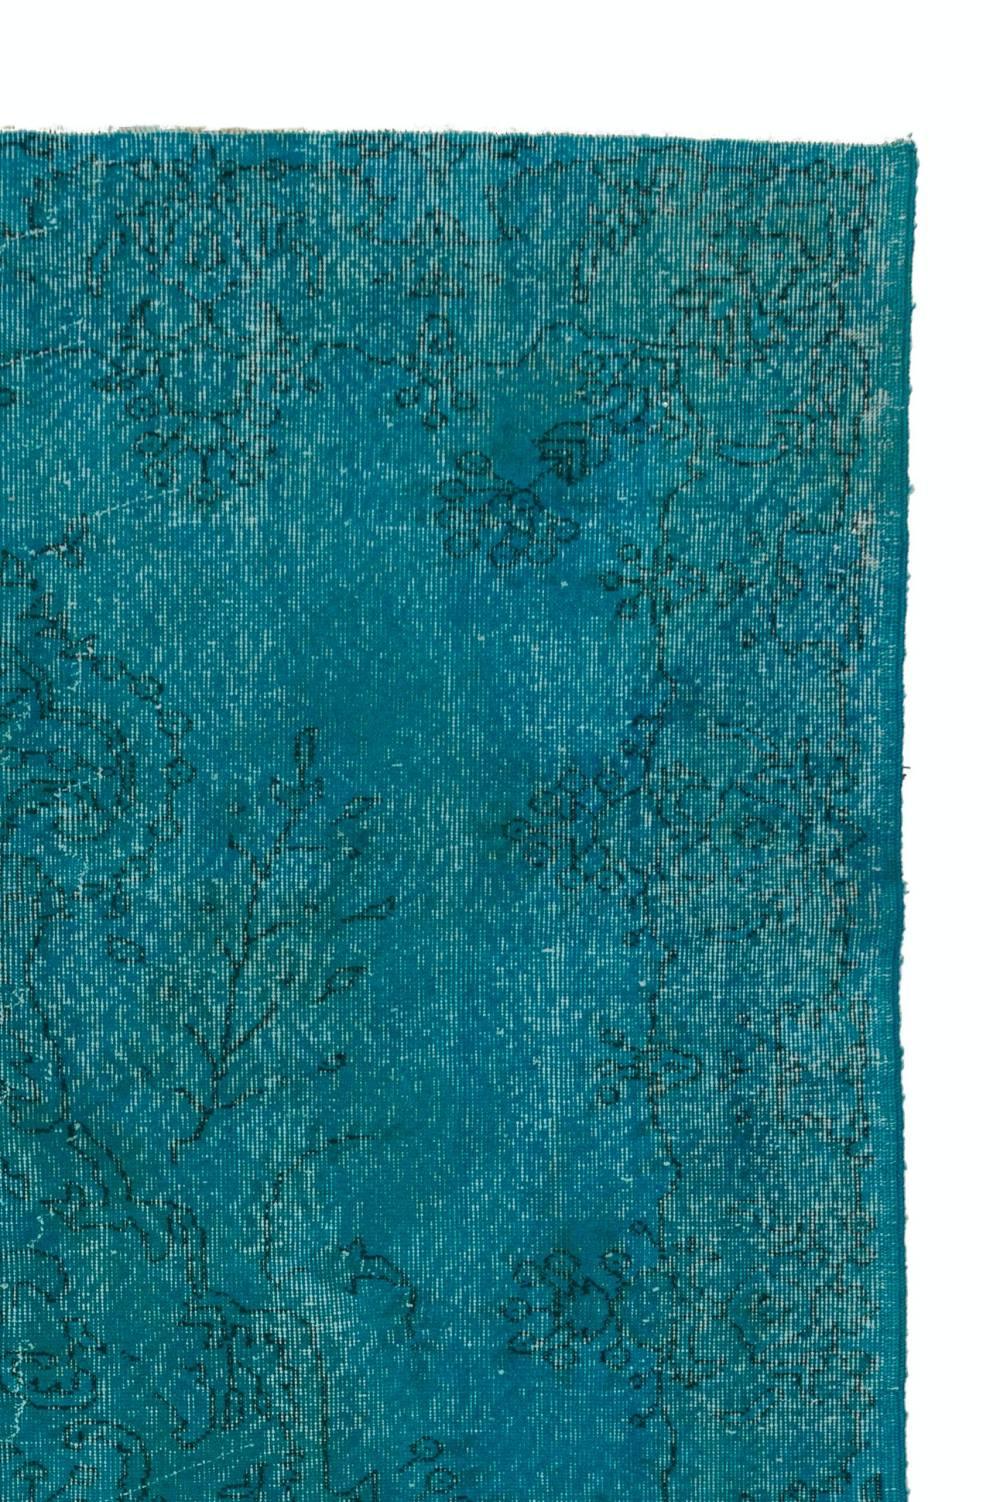 Modern 6x9.4 Ft Vintage Turkish Rug, Medallion Design Over-Dyed in Turquoise Blue Color